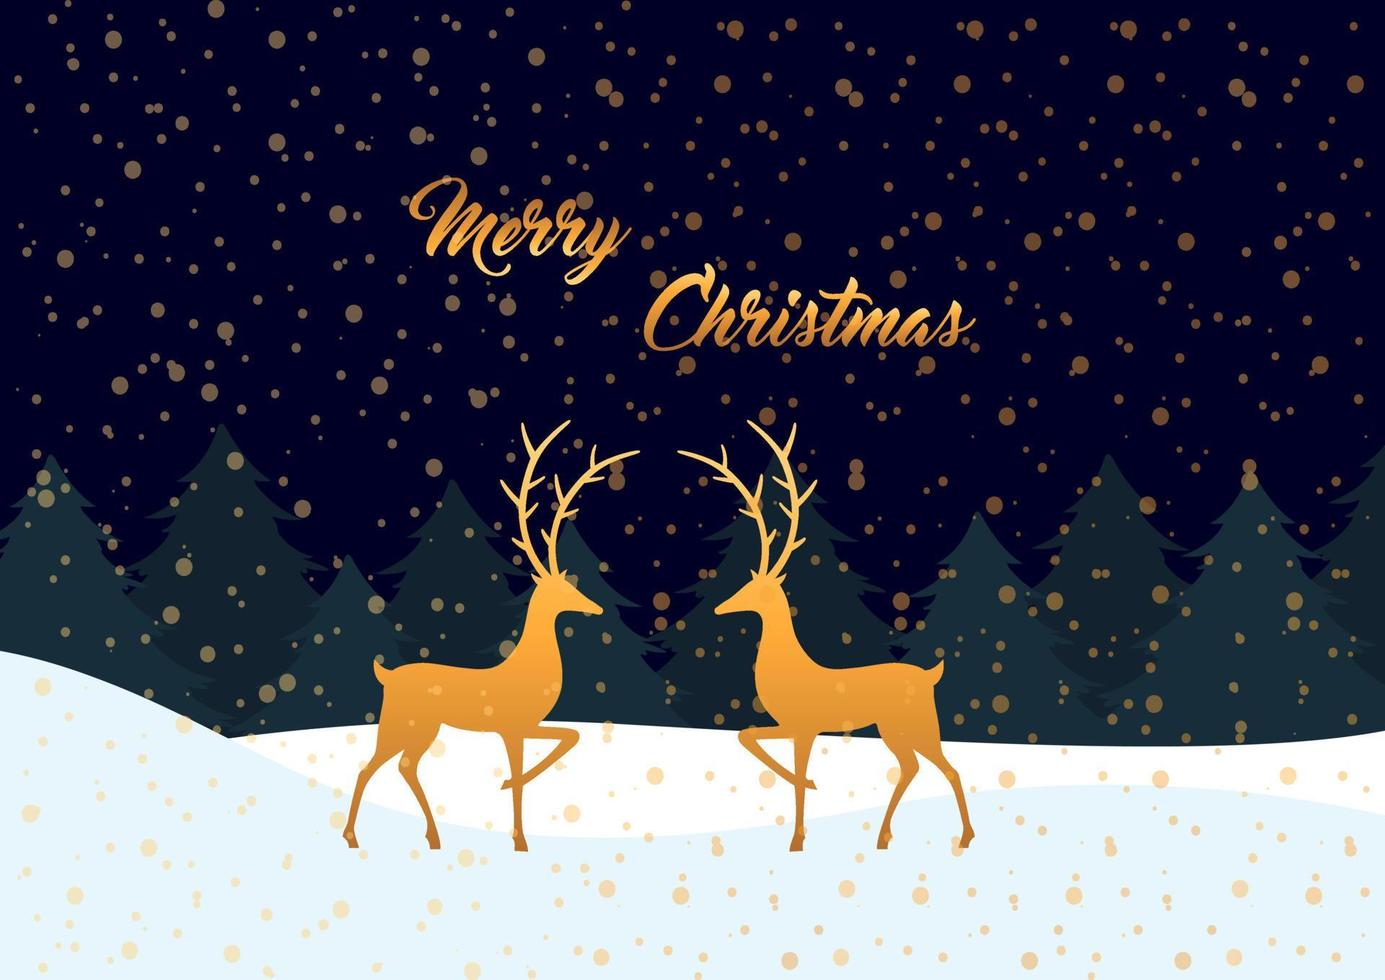 Golden Reindeers. Merry Christmas vector